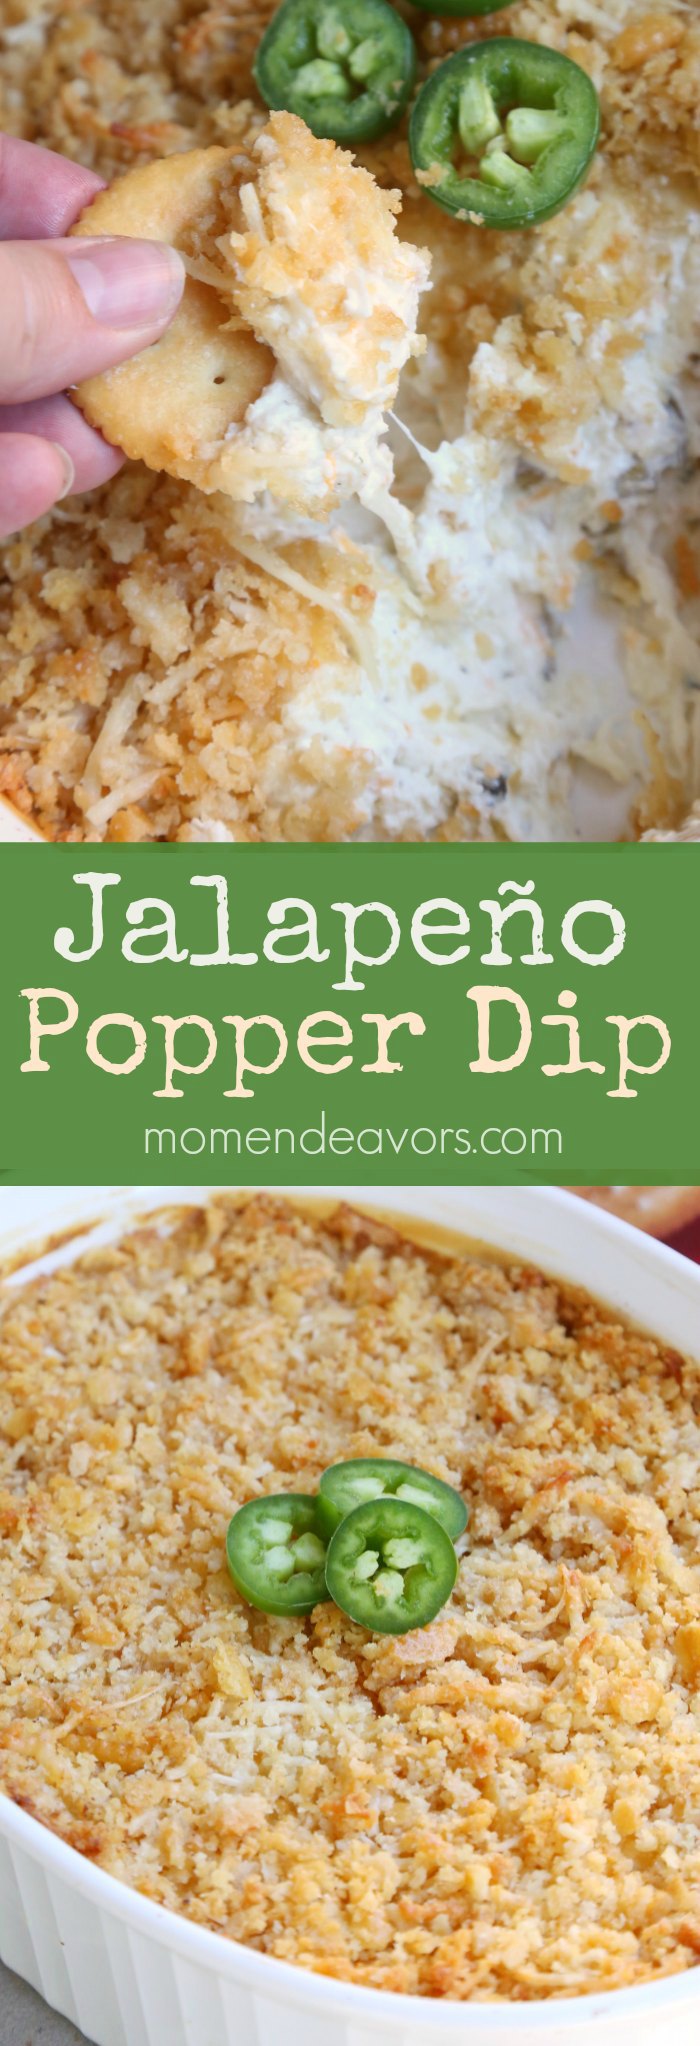 Jalapeno Popper Dip Recipe